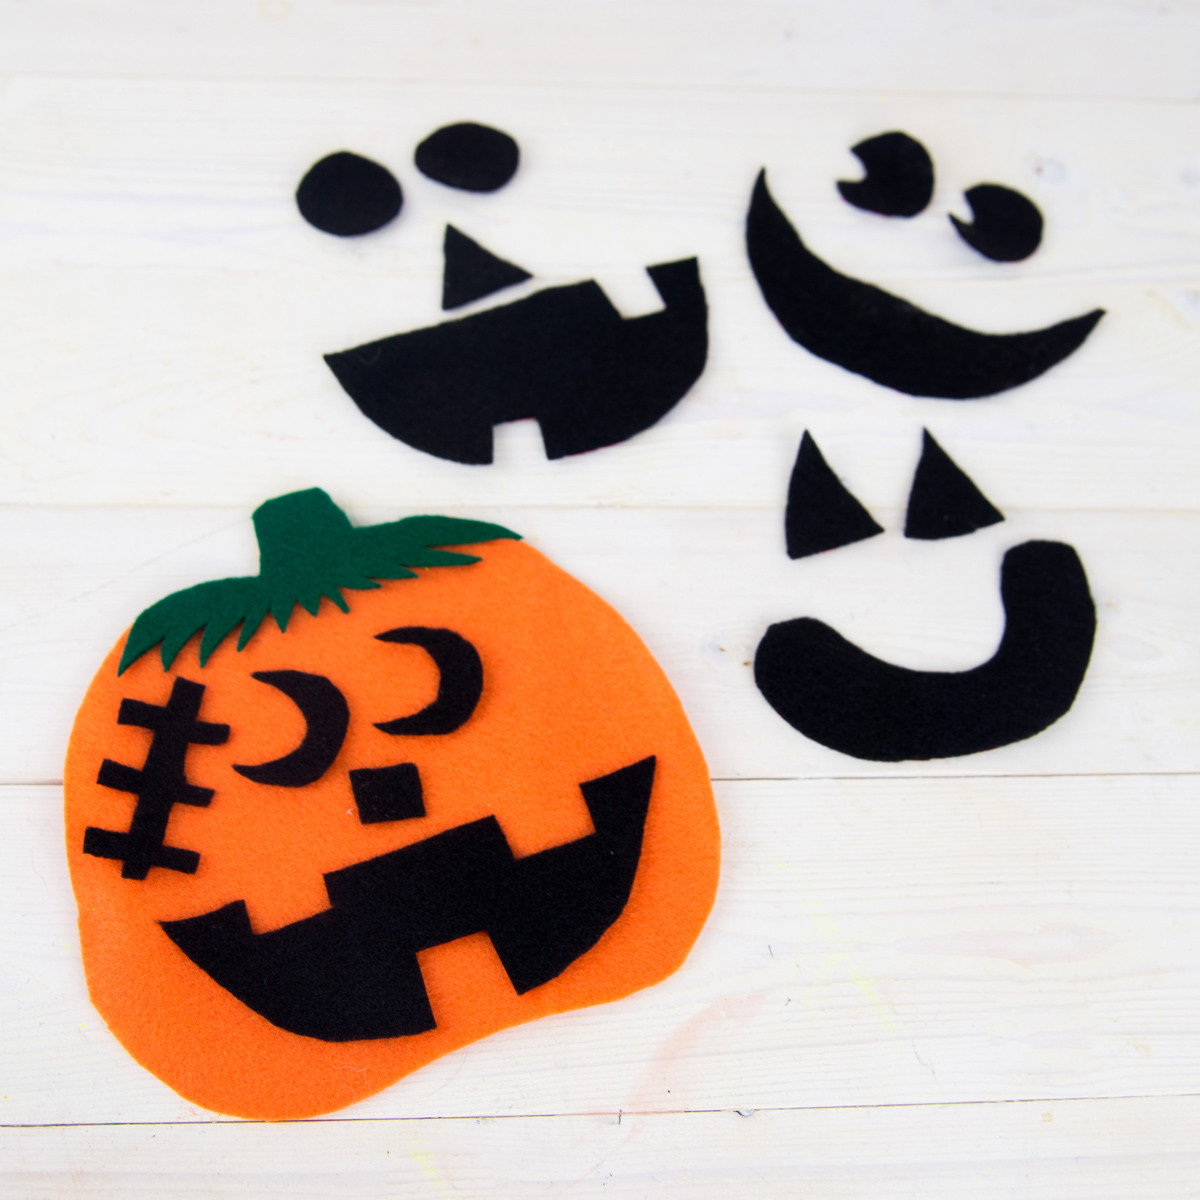 Pumpkin Craft Ideas Preschool
 Felt Pumpkin Preschool Craft